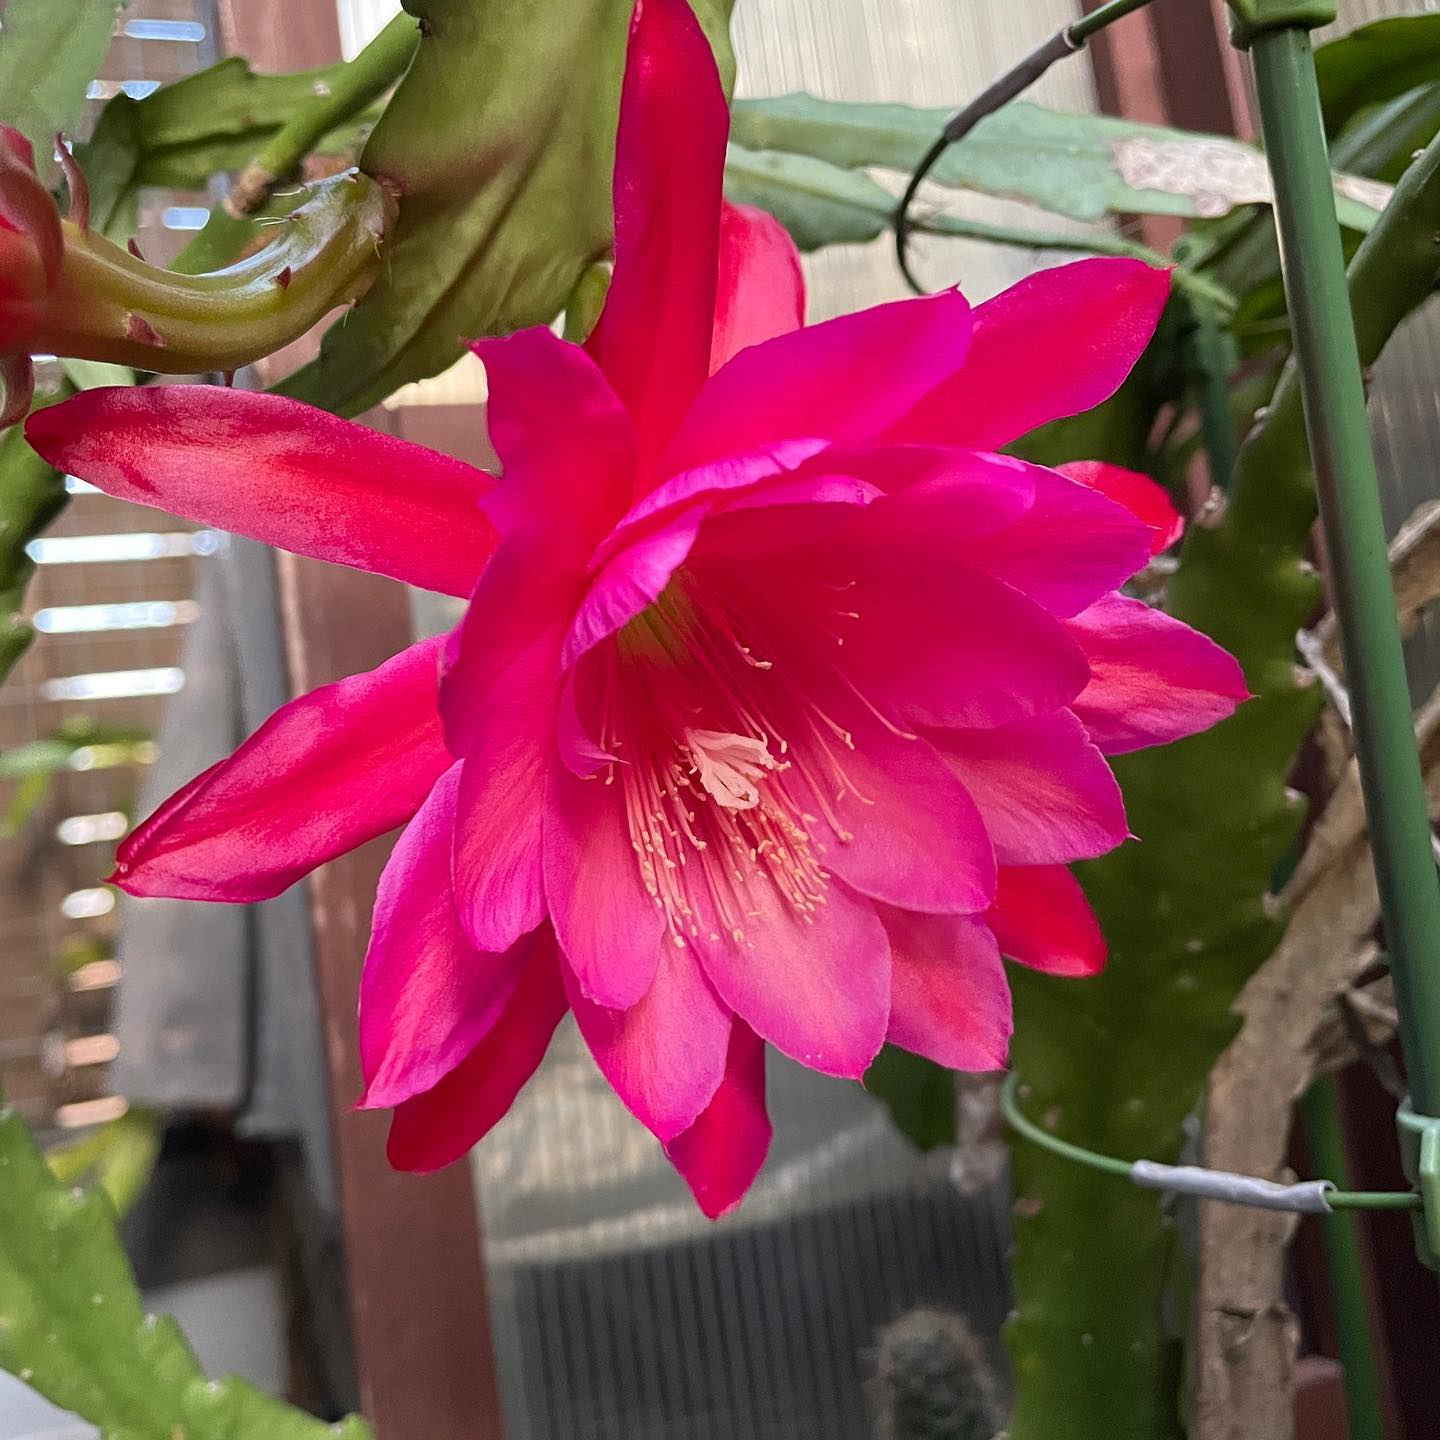 今日は花の金曜日、在宅勤務楽だ。ベランダ組のクジャクサボテン❣️完全ほったらかしですが、毎年元気に咲いてくれます。#クジャクサボテン #ベランダガーデニング #はなまっぷ #Epiphyllum #orchidcactus #beranda #wfh